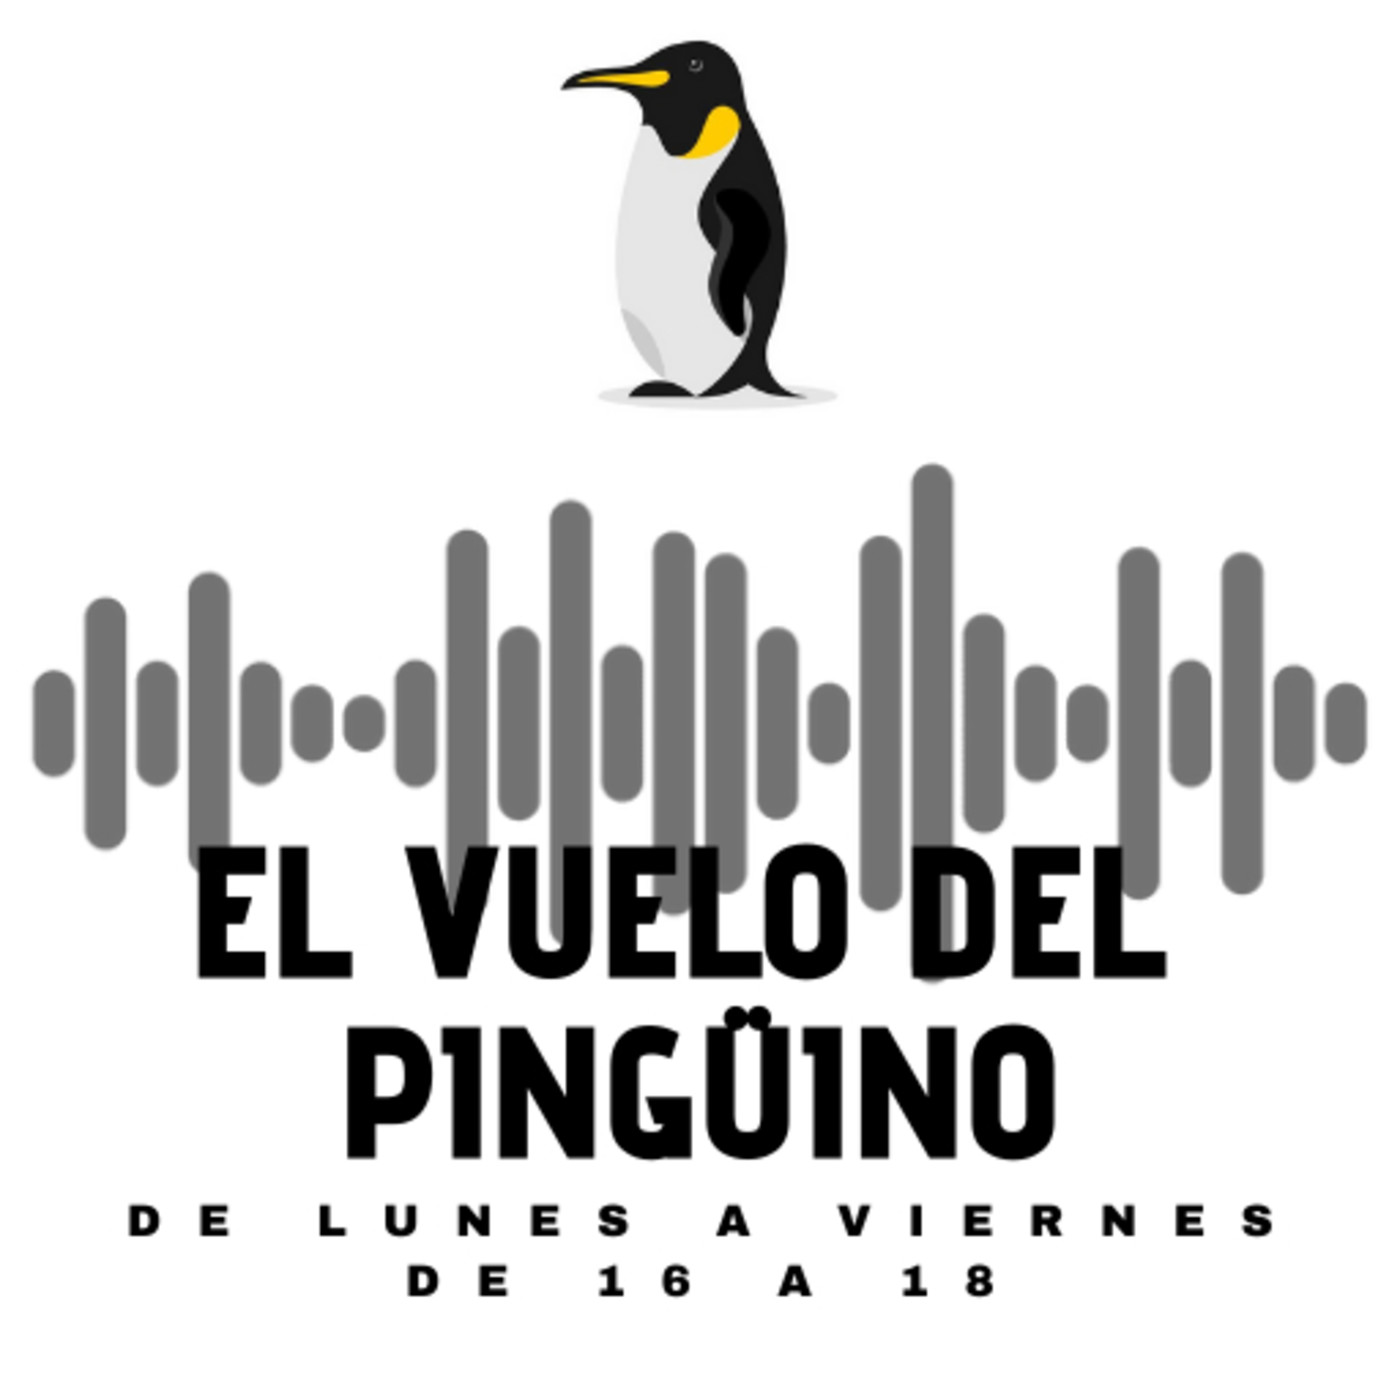 El vuelo del Pingüino - Miércoles - Actualidad, humor, cultura y música - 24-02-2021